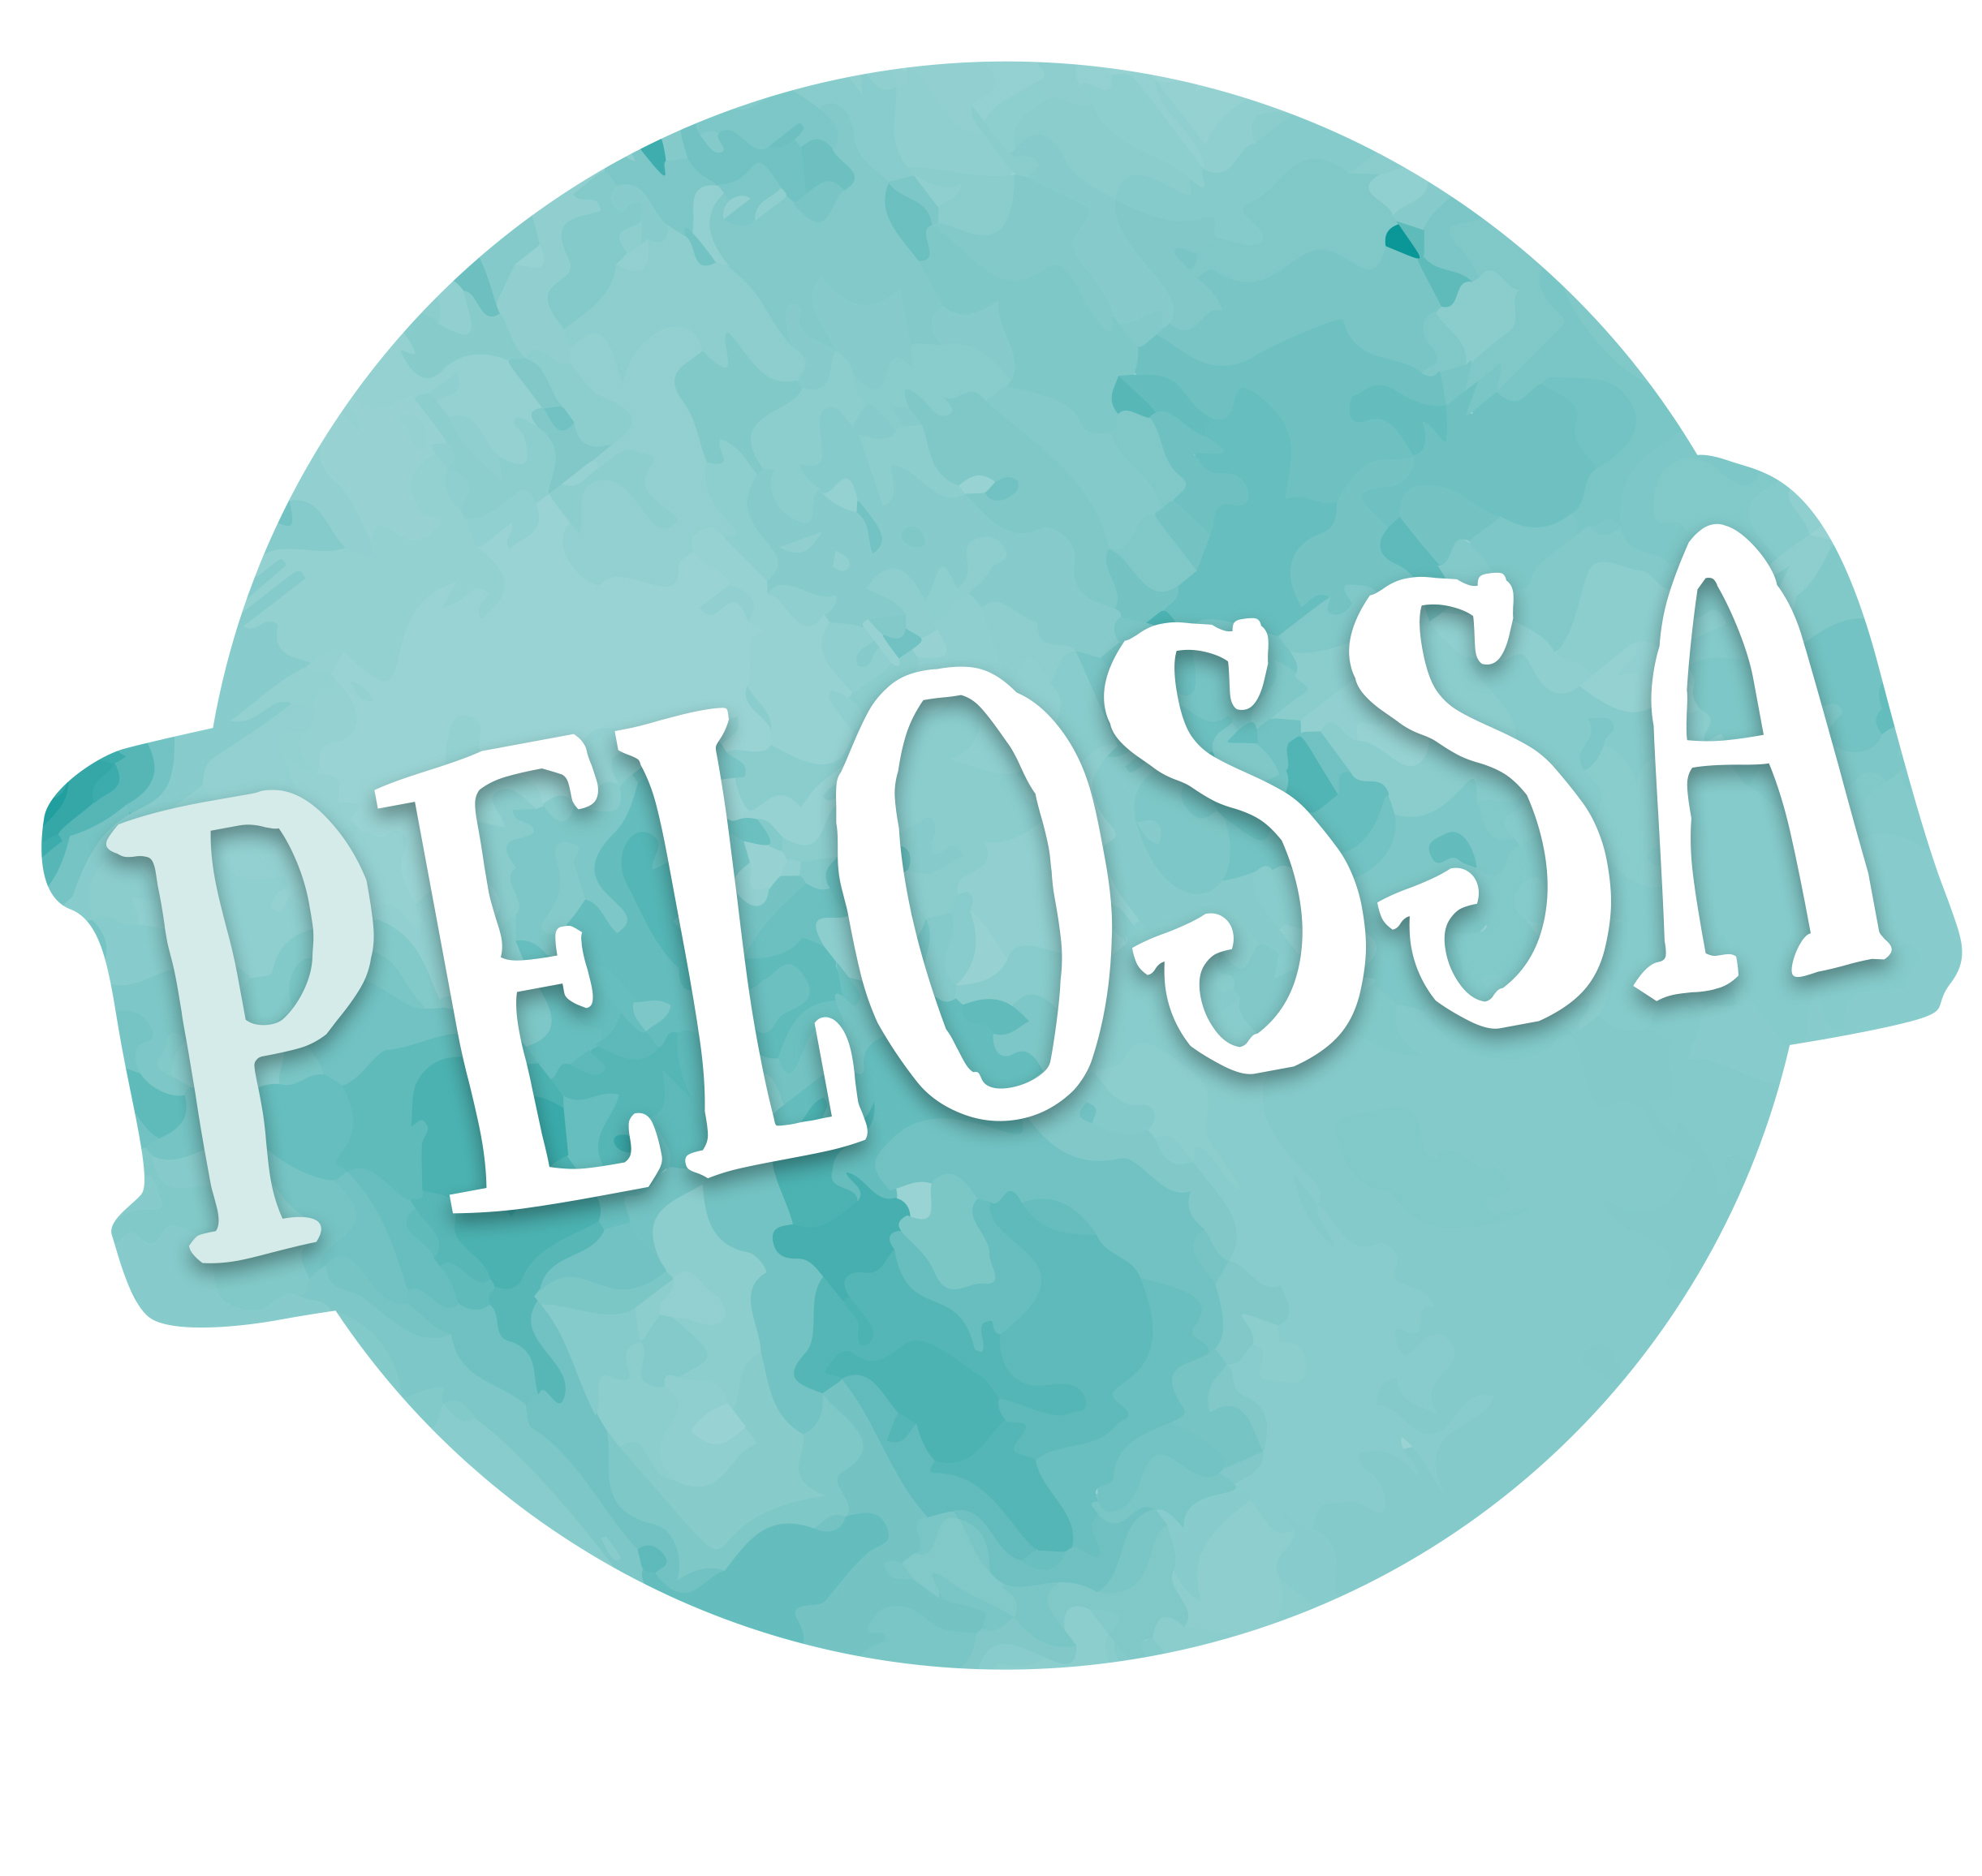 Pelossa-logo